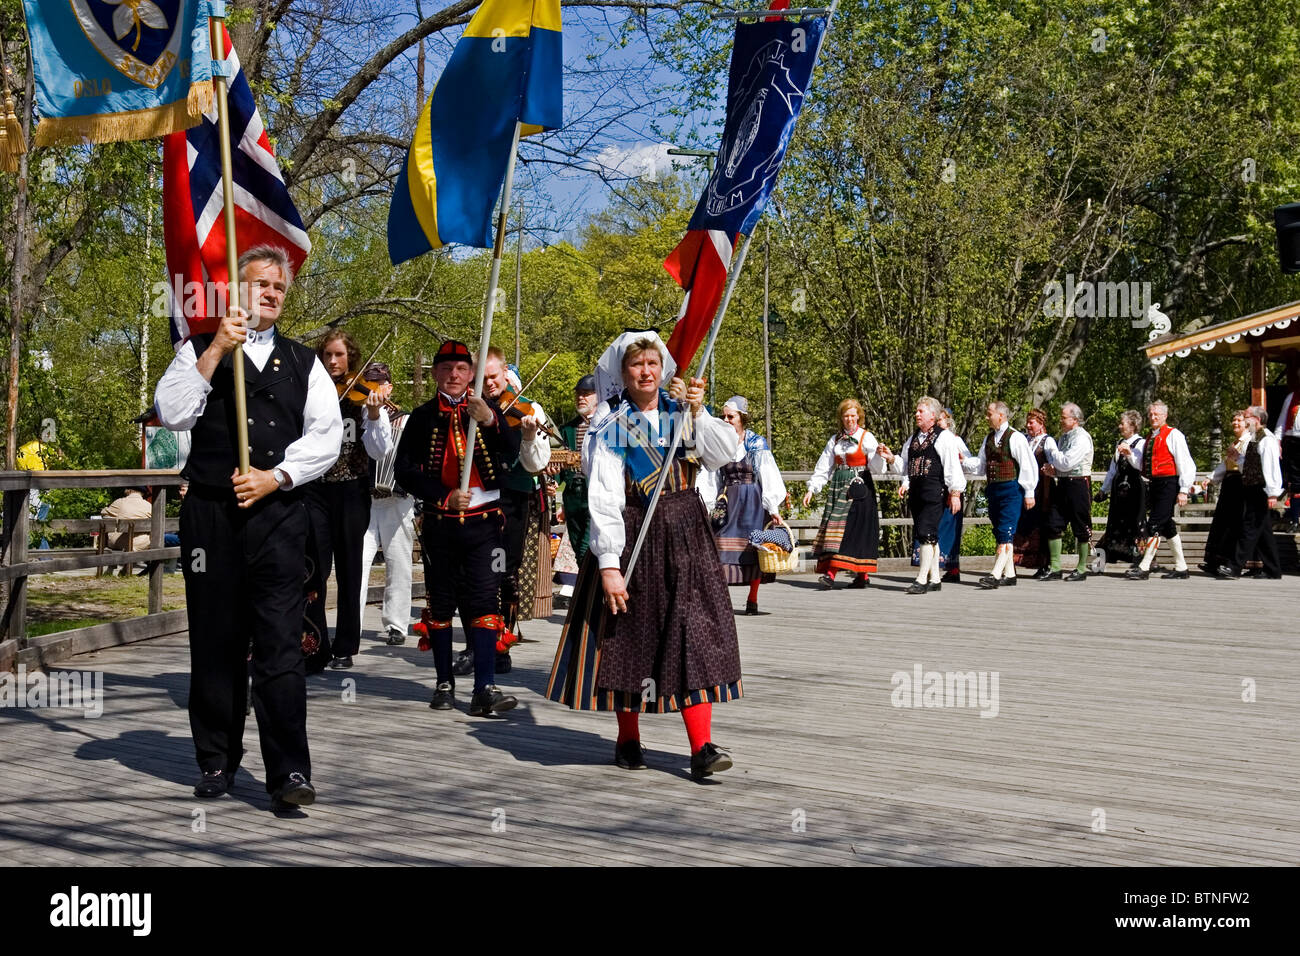 Norwegian National Day celebrations at Skansen (Sweden) Stock Photo